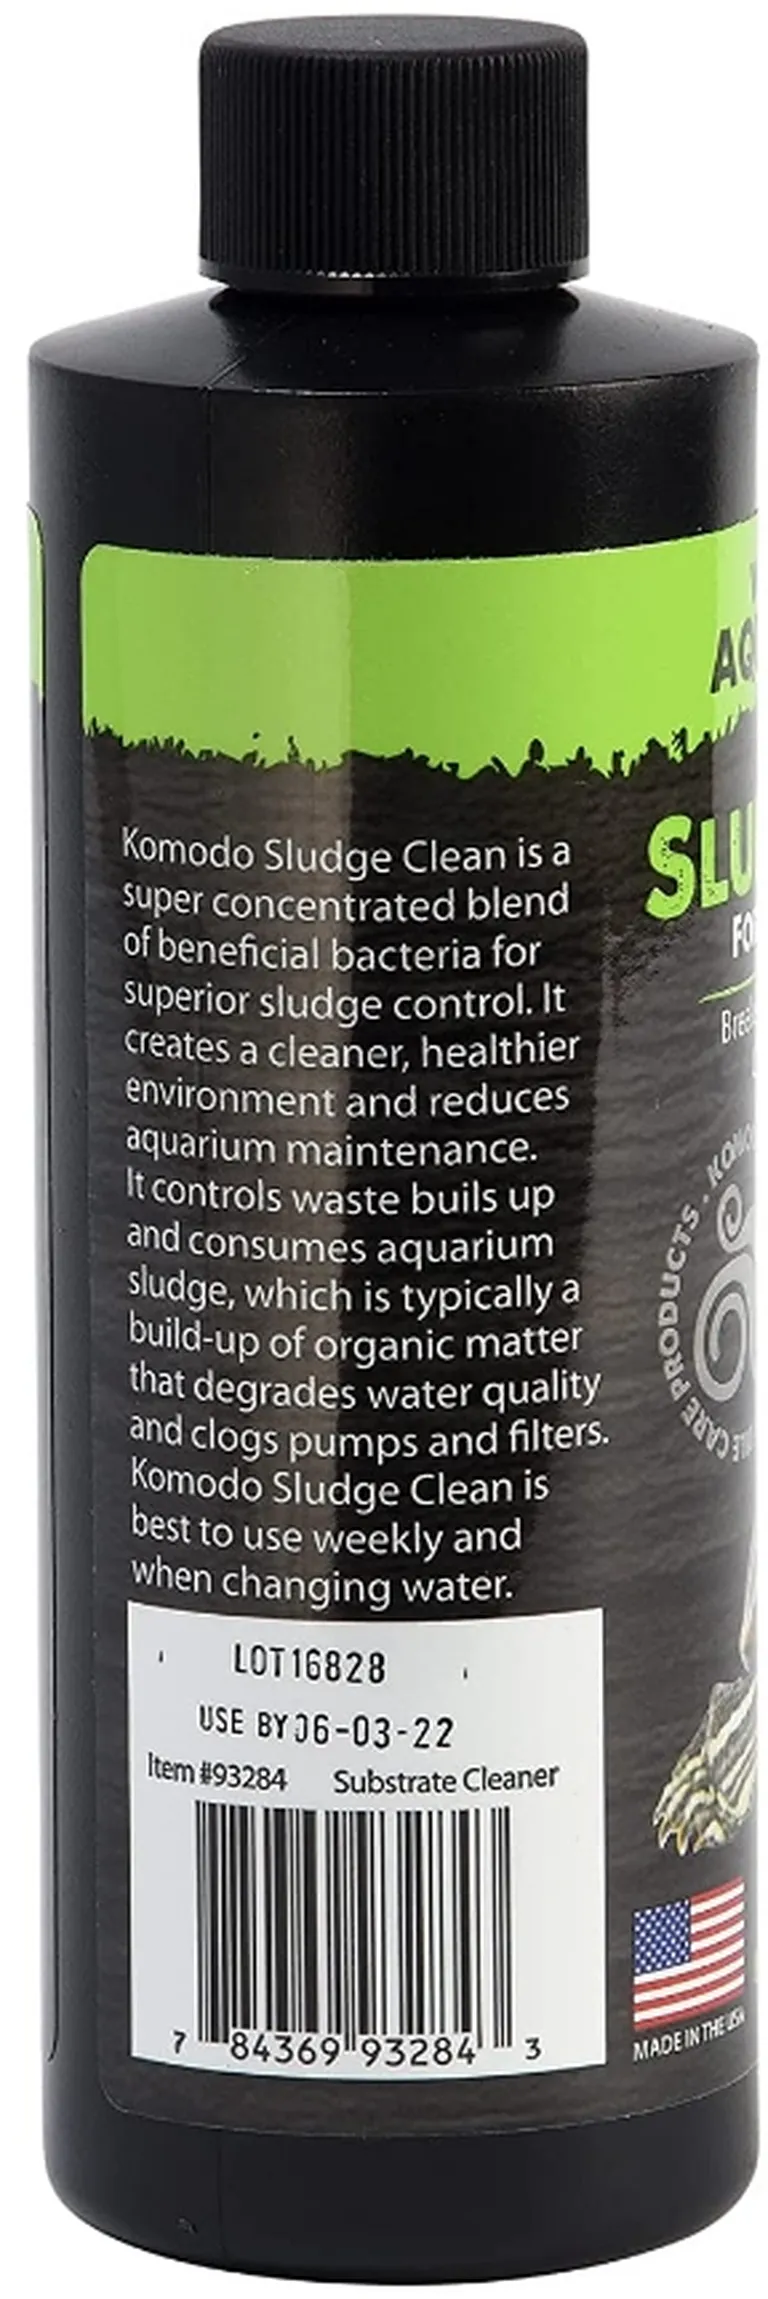 Komodo Sludge Cleaner for Aquatic Reptile Tanks Photo 2